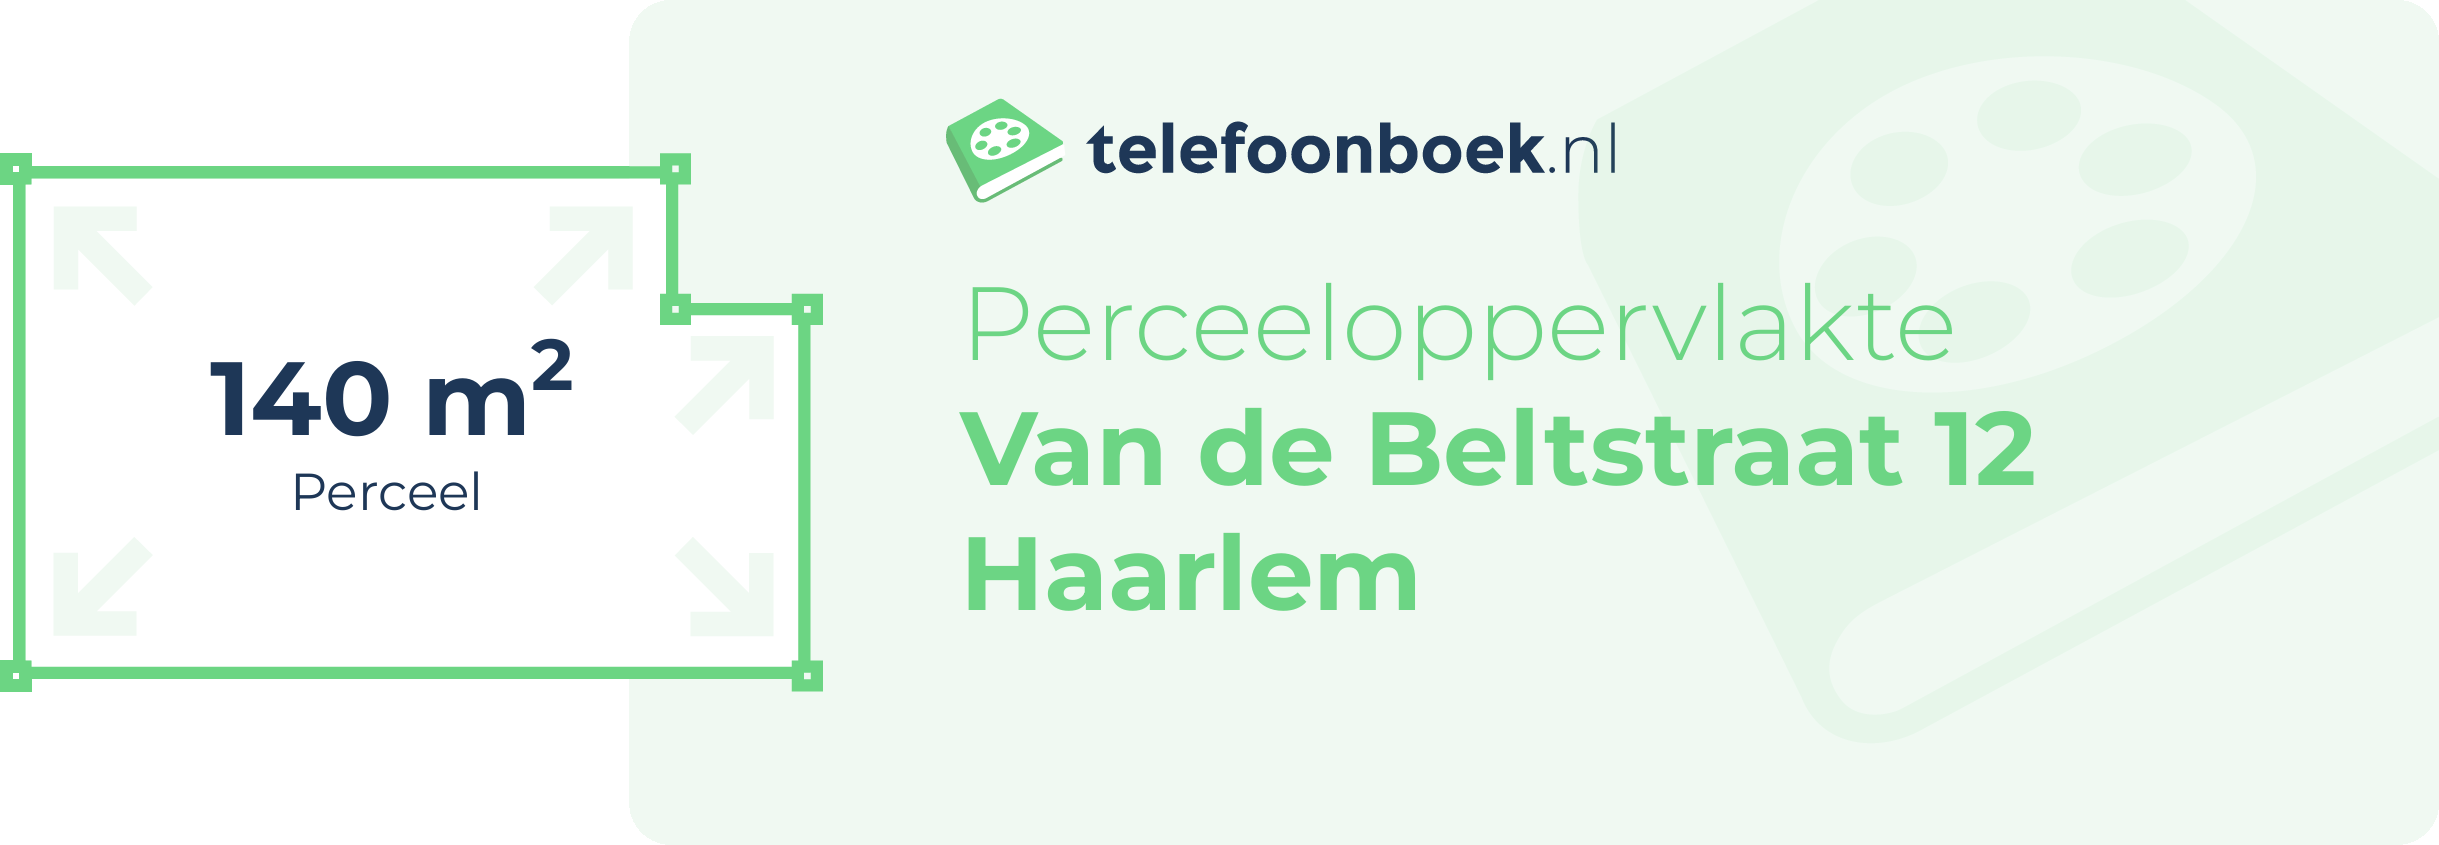 Perceeloppervlakte Van De Beltstraat 12 Haarlem